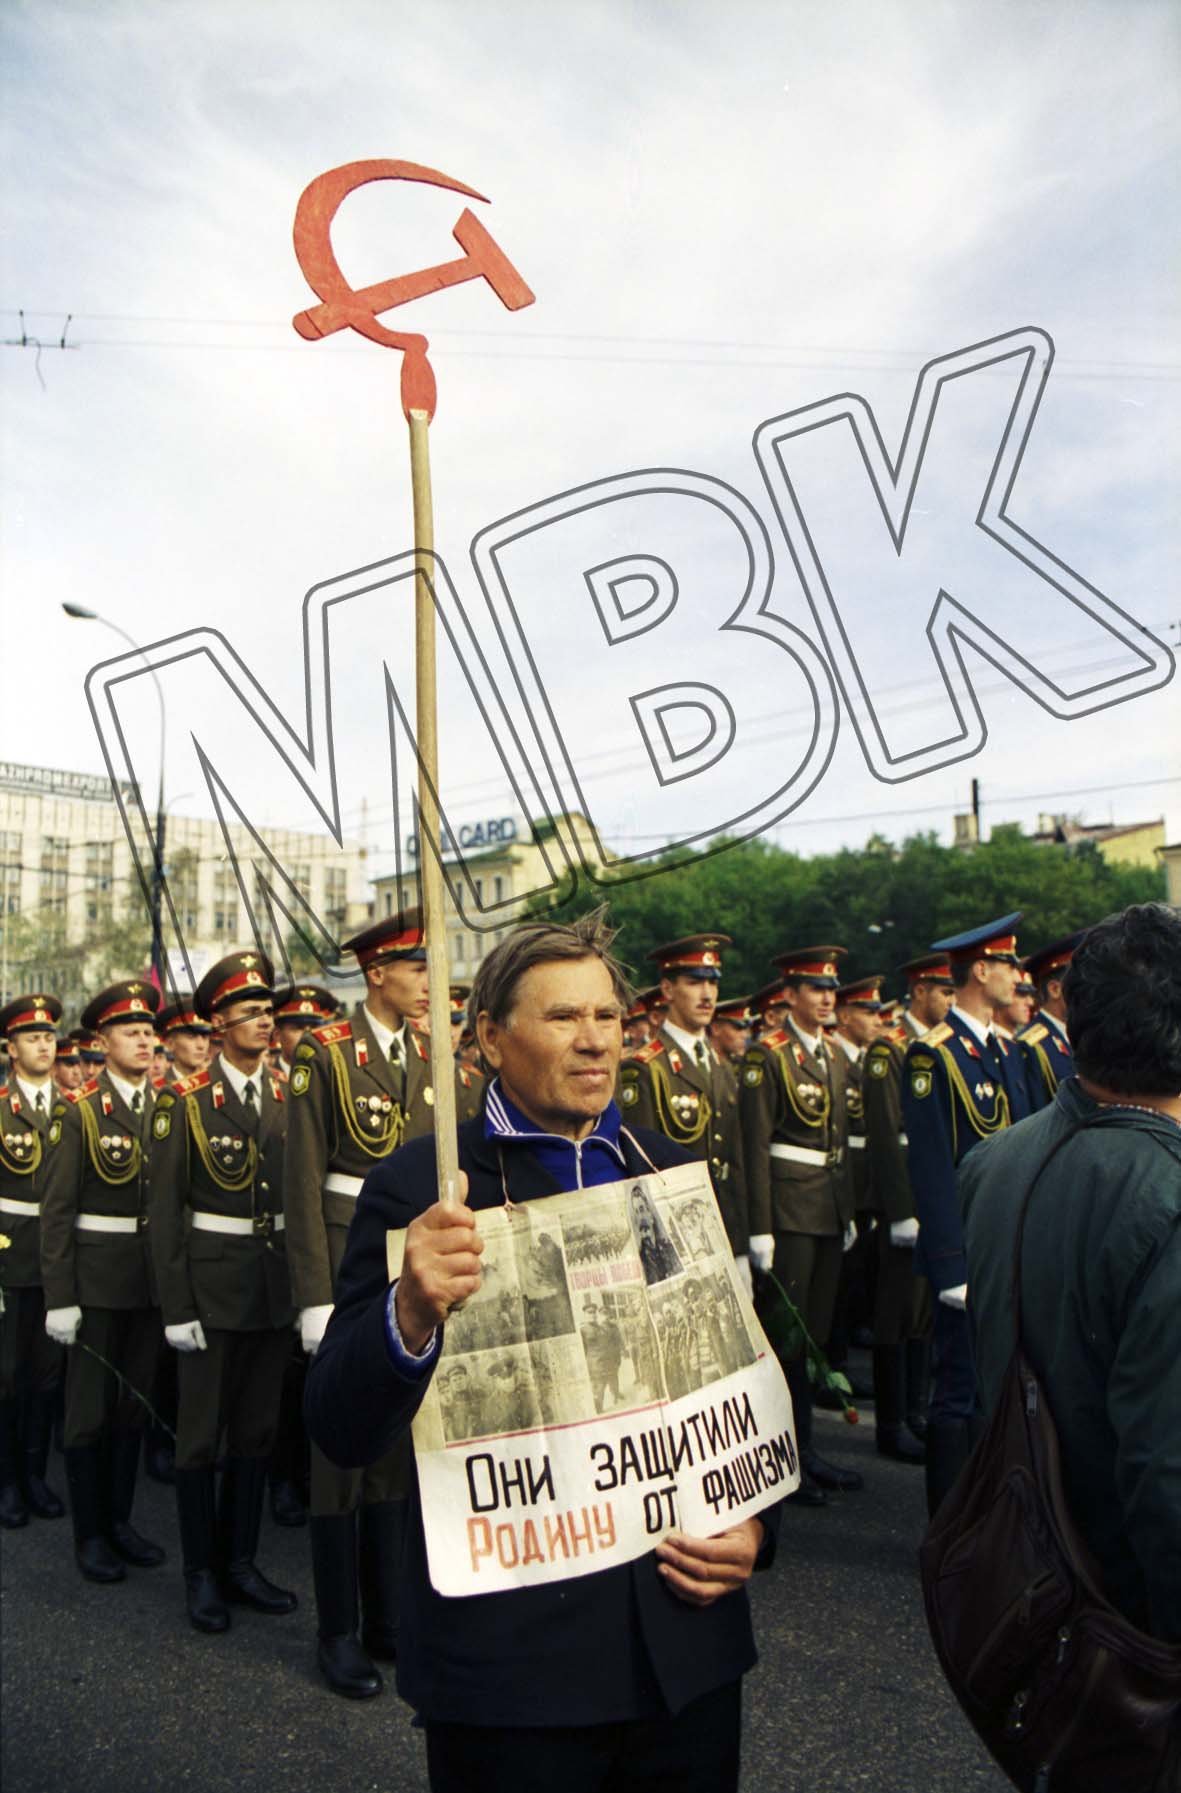 Fotografie: Moskauer mit Schild „Sie haben die Heimat vor dem Faschismus verteidigt“, Moskau, 3. September 1994 (Museum Berlin-Karlshorst RR-P)